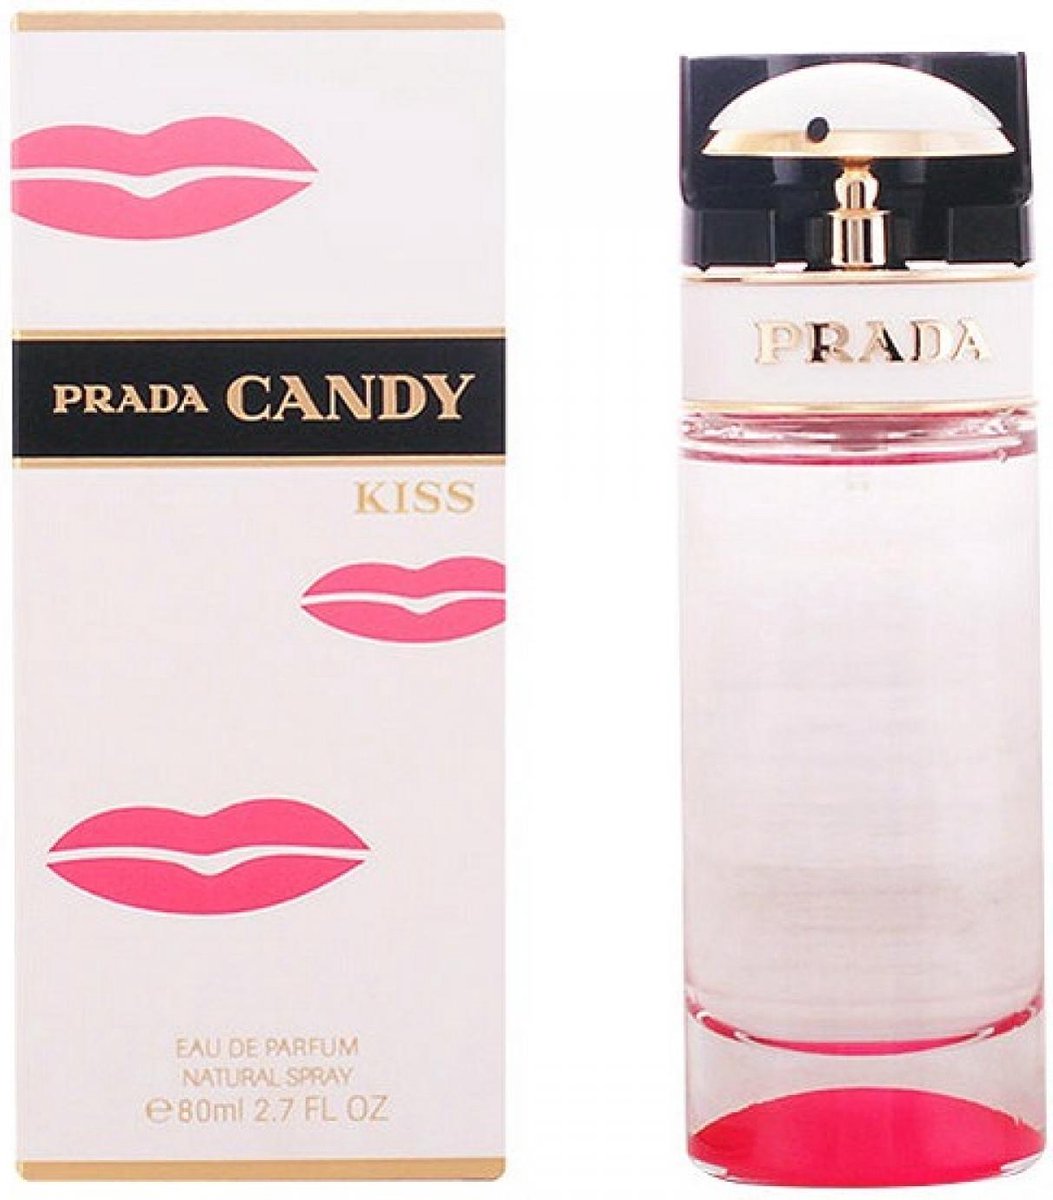 Prada Candy Kiss - 50 ml - eau de parfum spray - damesparfum